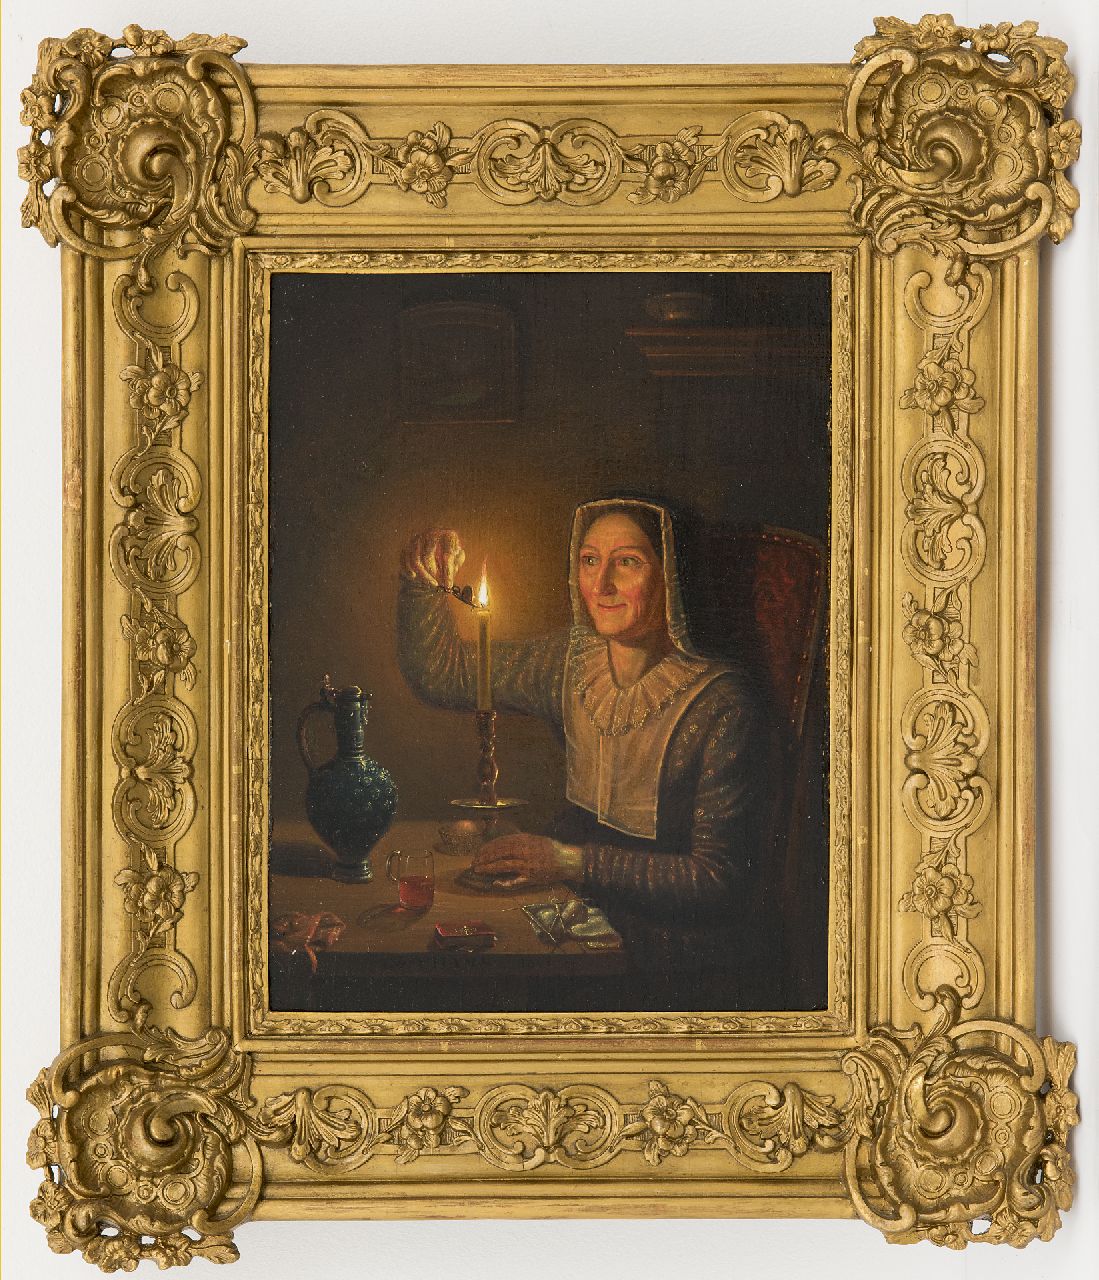 Thans W.  | Willem Thans | Schilderijen te koop aangeboden | Vrouw met kaars, olieverf op paneel 29,7 x 22,4 cm, gesigneerd middenonder op de tafelrand en gedateerd 1850